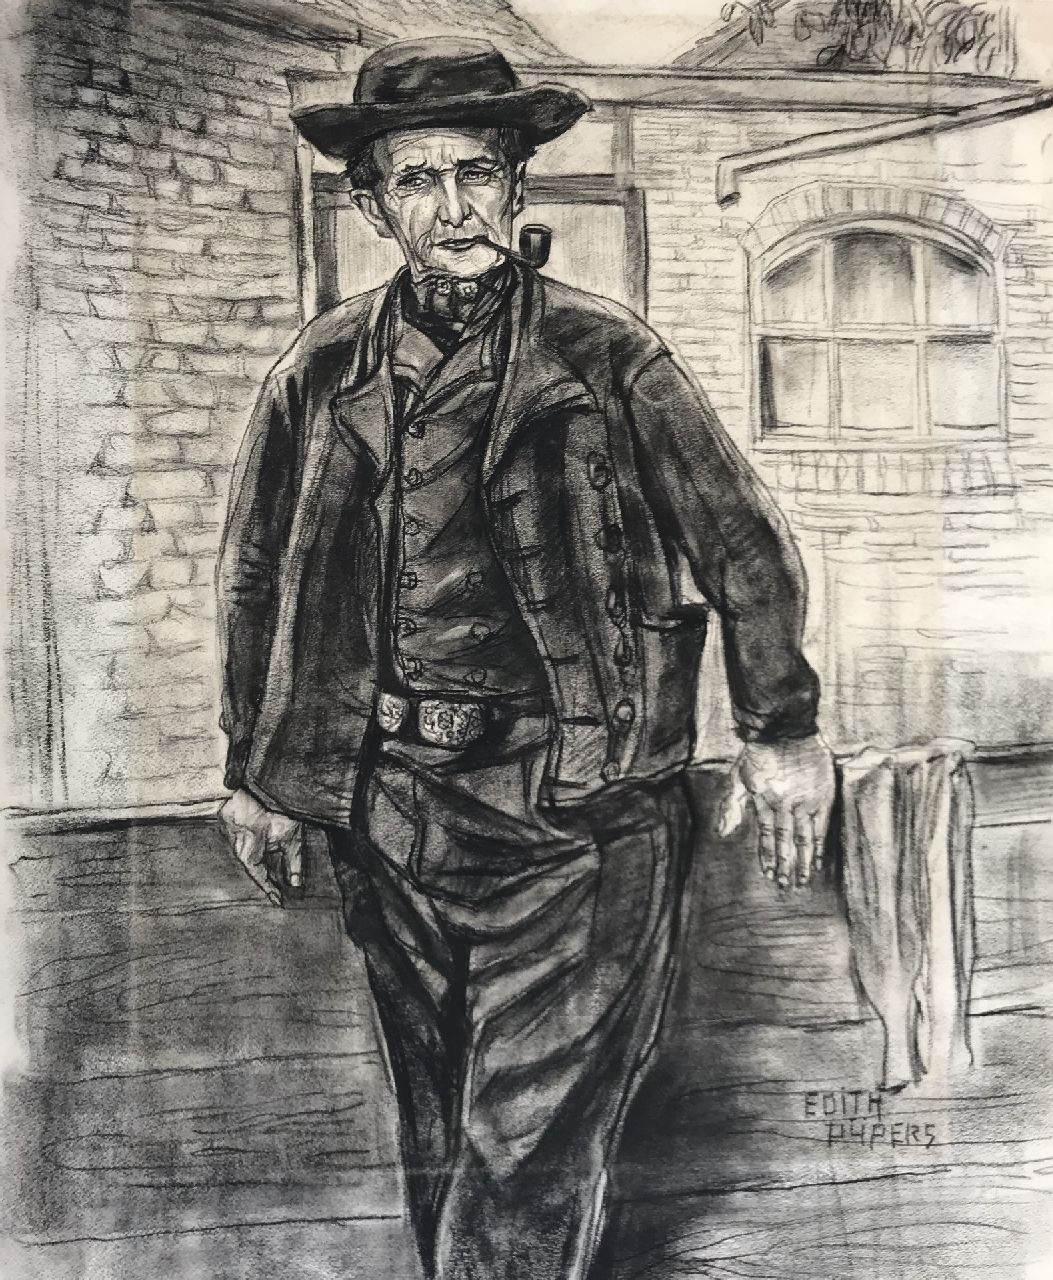 Pijpers E.E.  | 'Edith' Elizabeth Pijpers | Aquarellen en tekeningen te koop aangeboden | Portret van een boer, houtskool op papier 60,2 x 49,9 cm, gesigneerd rechtsonder